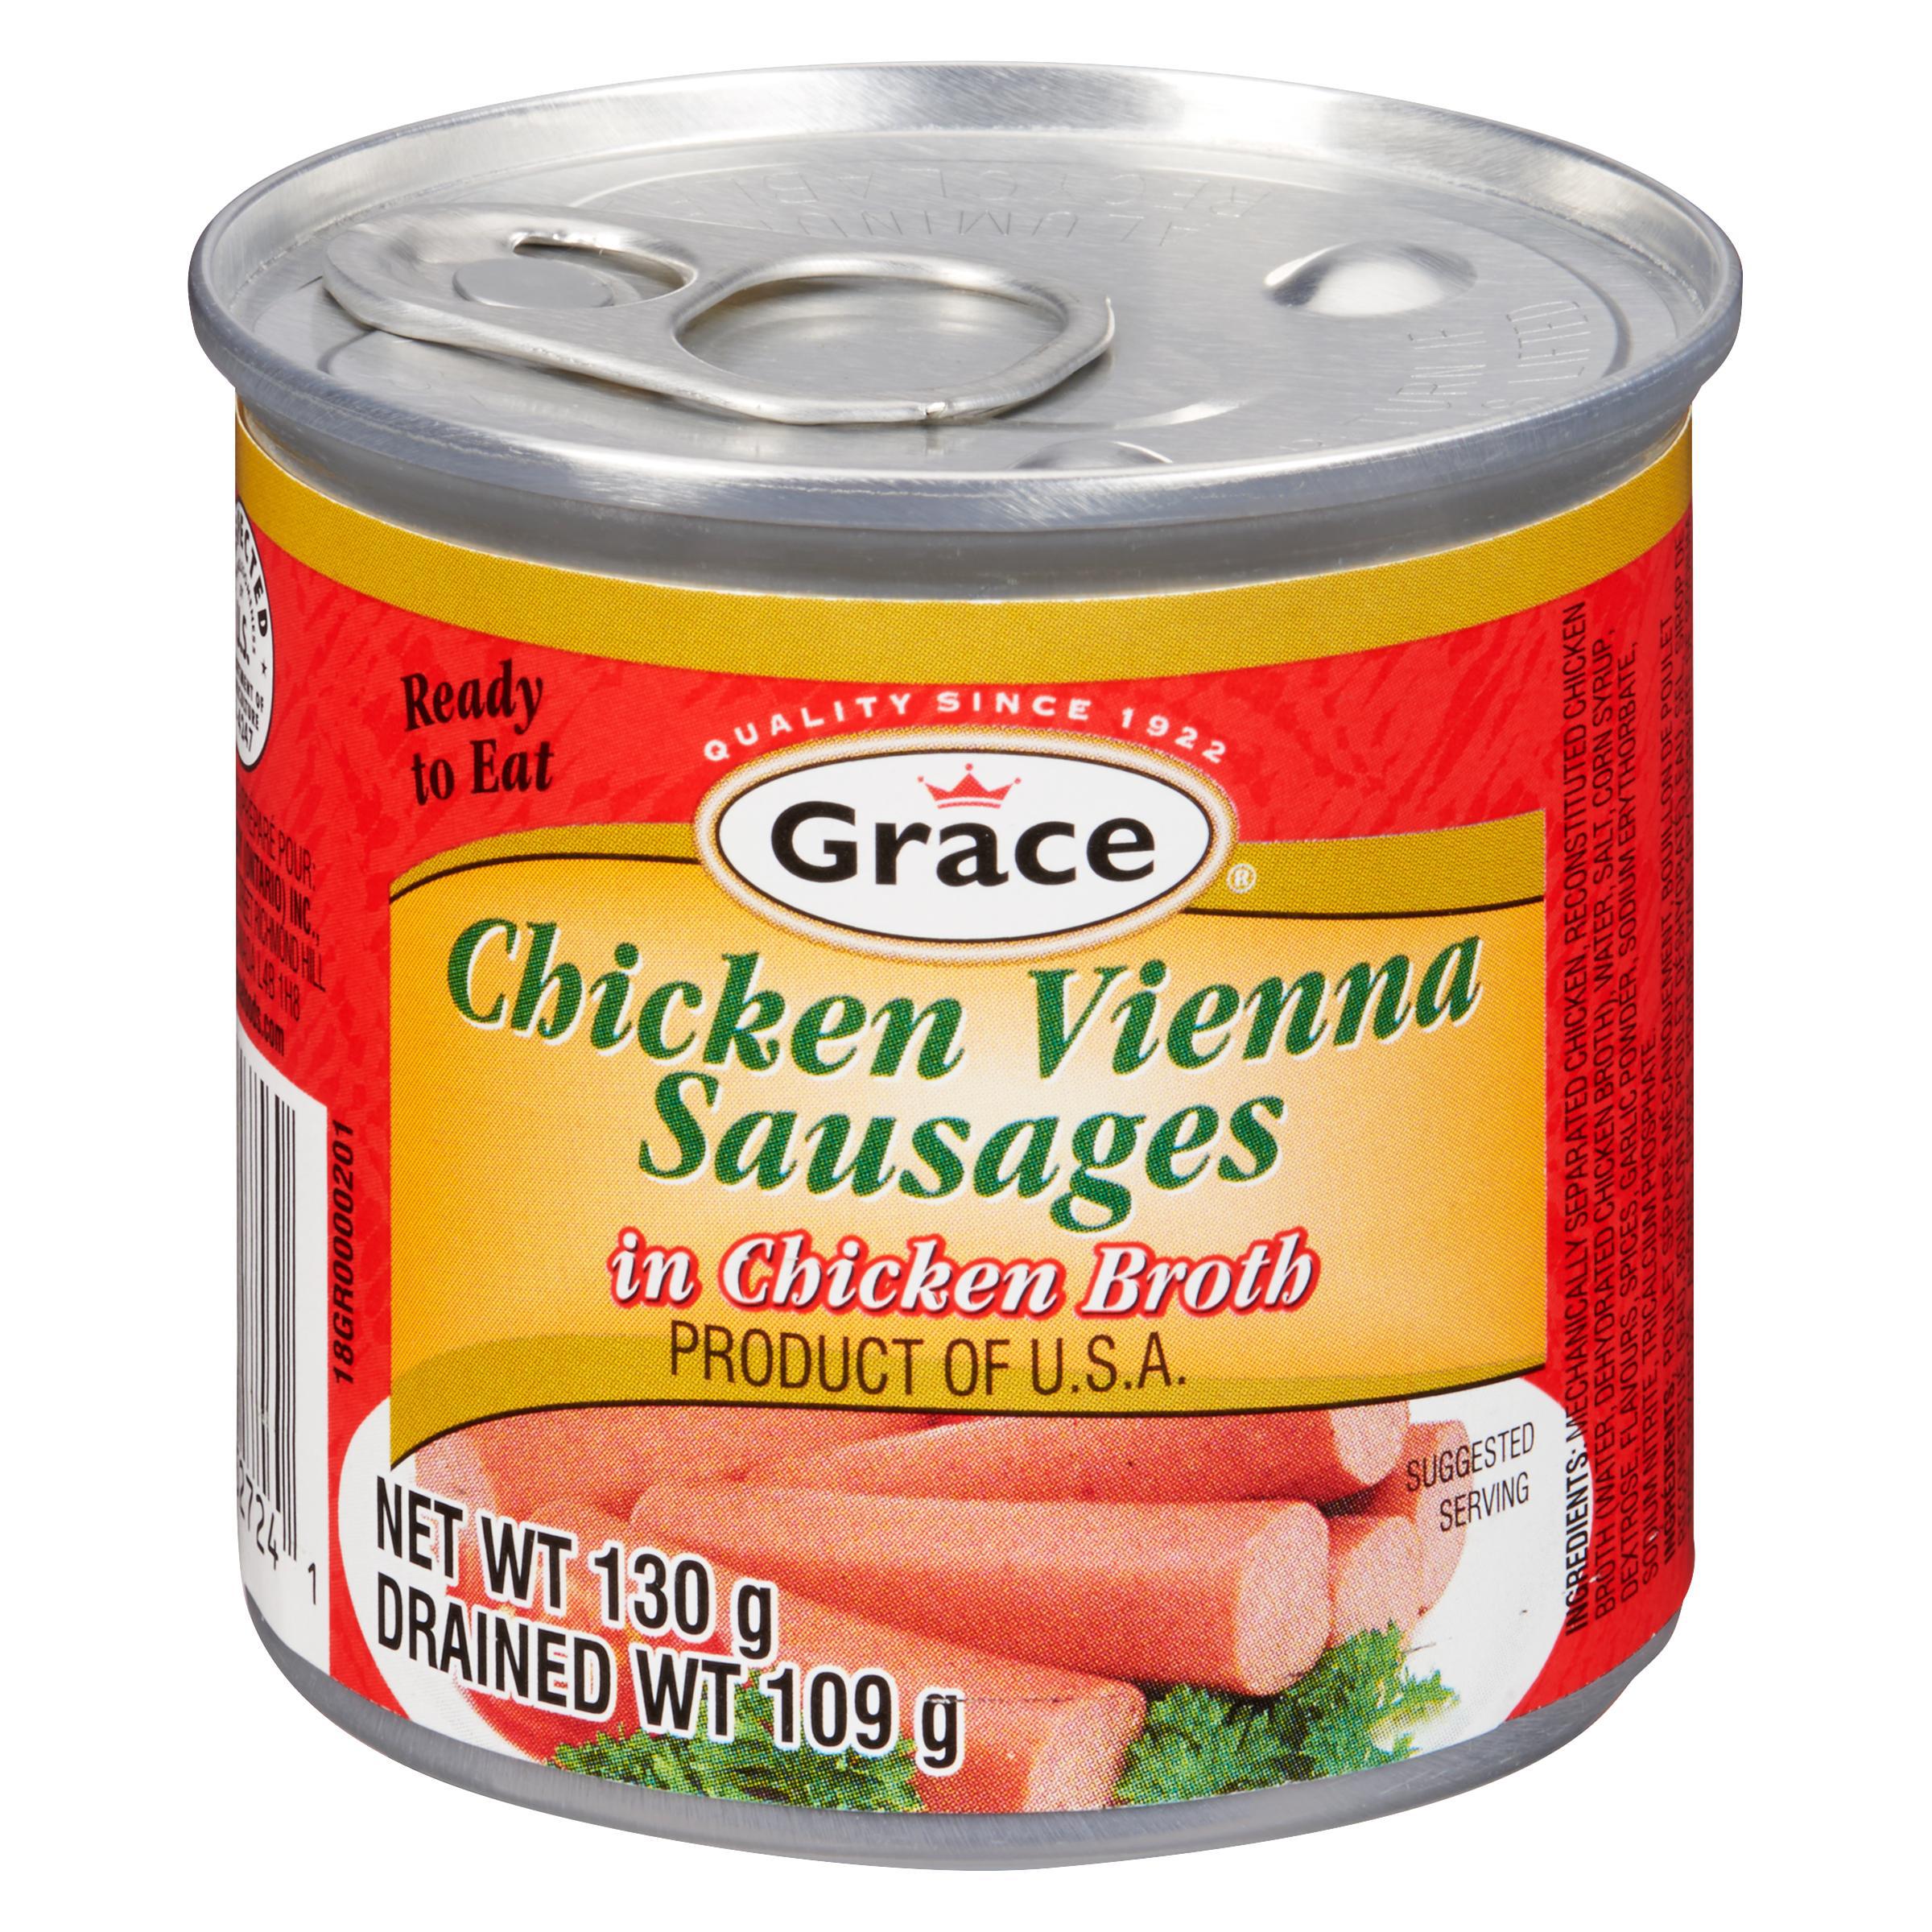 Grace Chicken Vienna Sausage